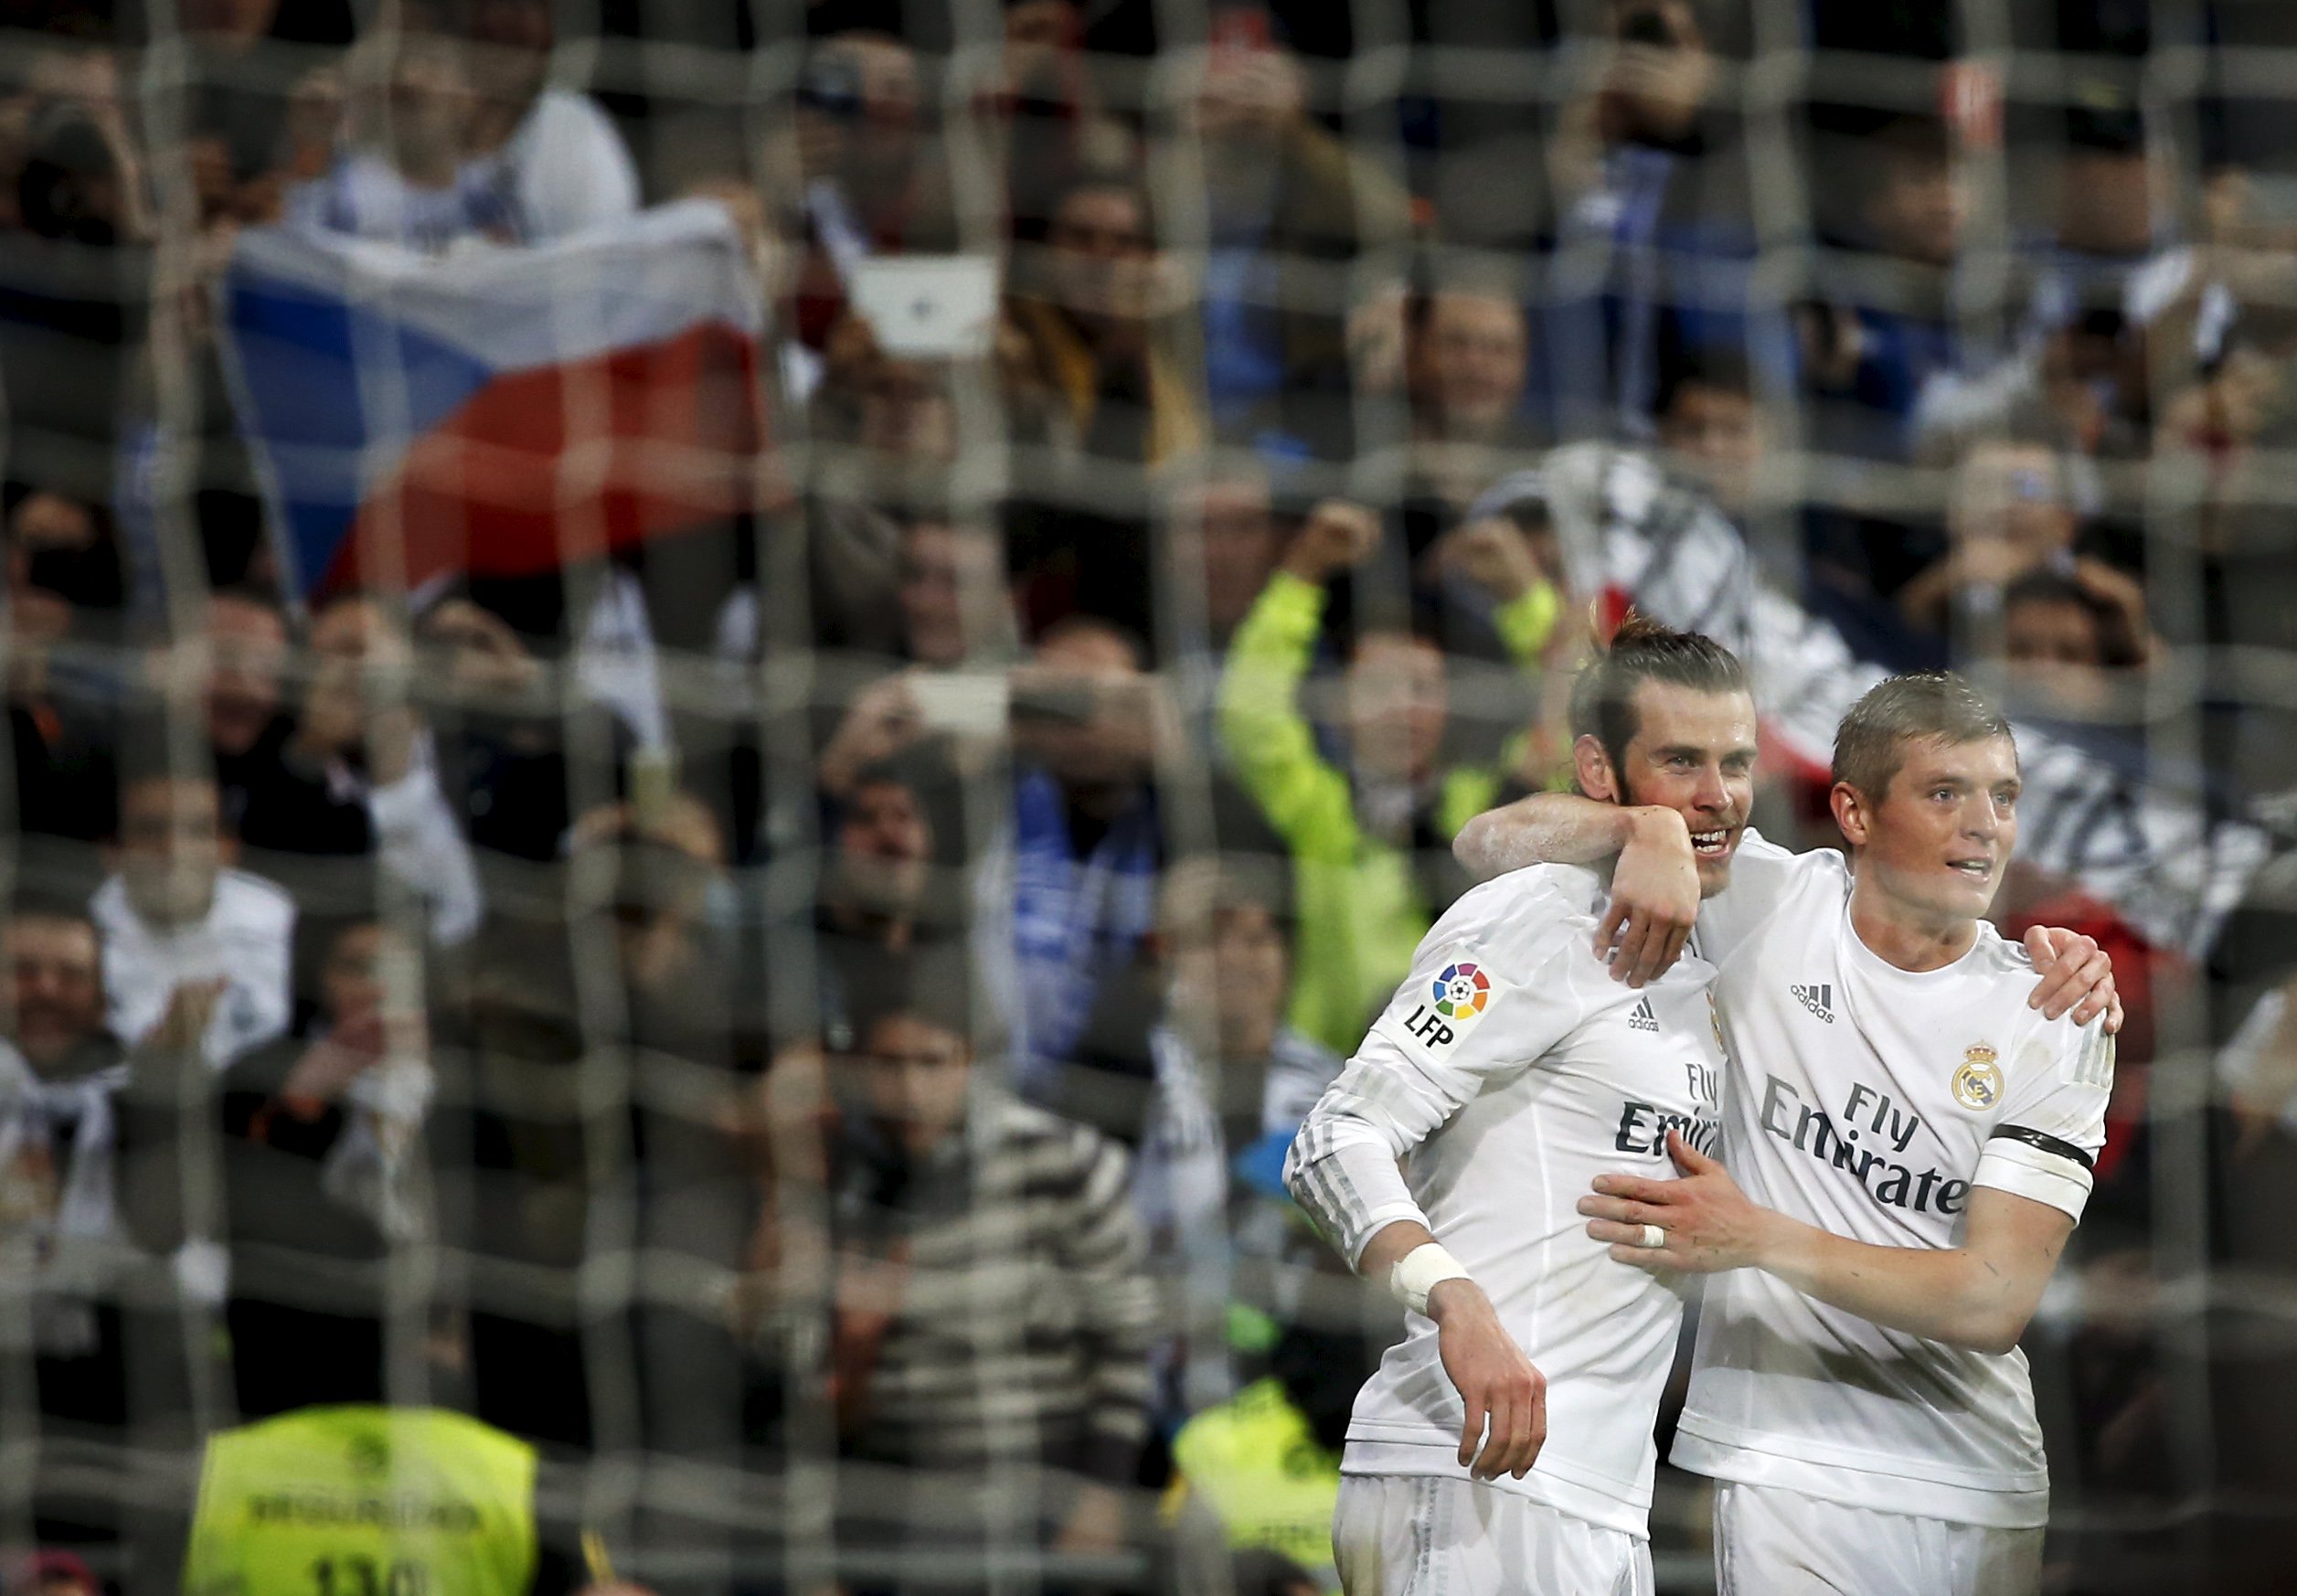 Jubel während und nach dem Spiel, auf und neben dem Platz. Zidanes Einstand als Trainer bei Real Madrid ist geglückt. Im Bild feiern Gareth Bale und Teamkollege Toni Kroos einen Treffer.